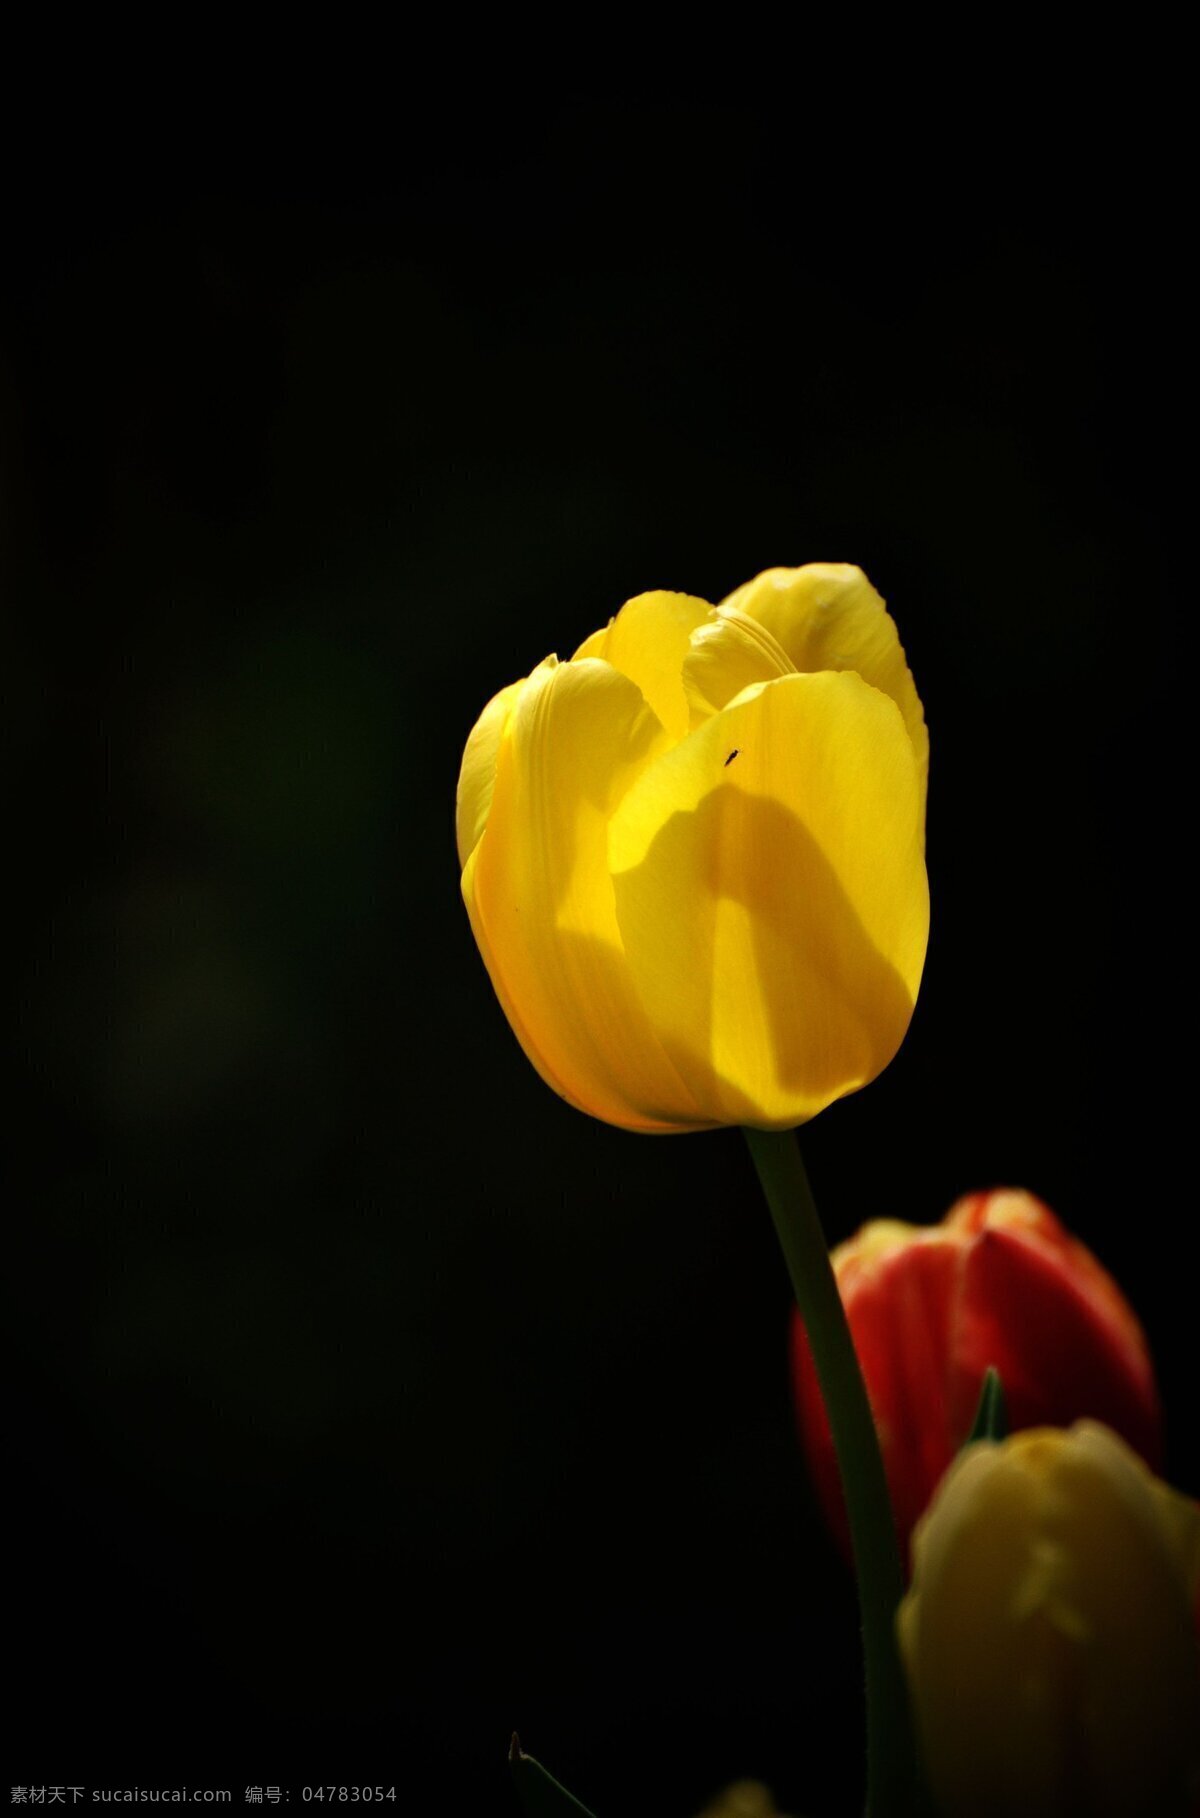 唯美 黄色 郁金香 高清 鲜花 花朵 花卉 花草 植物